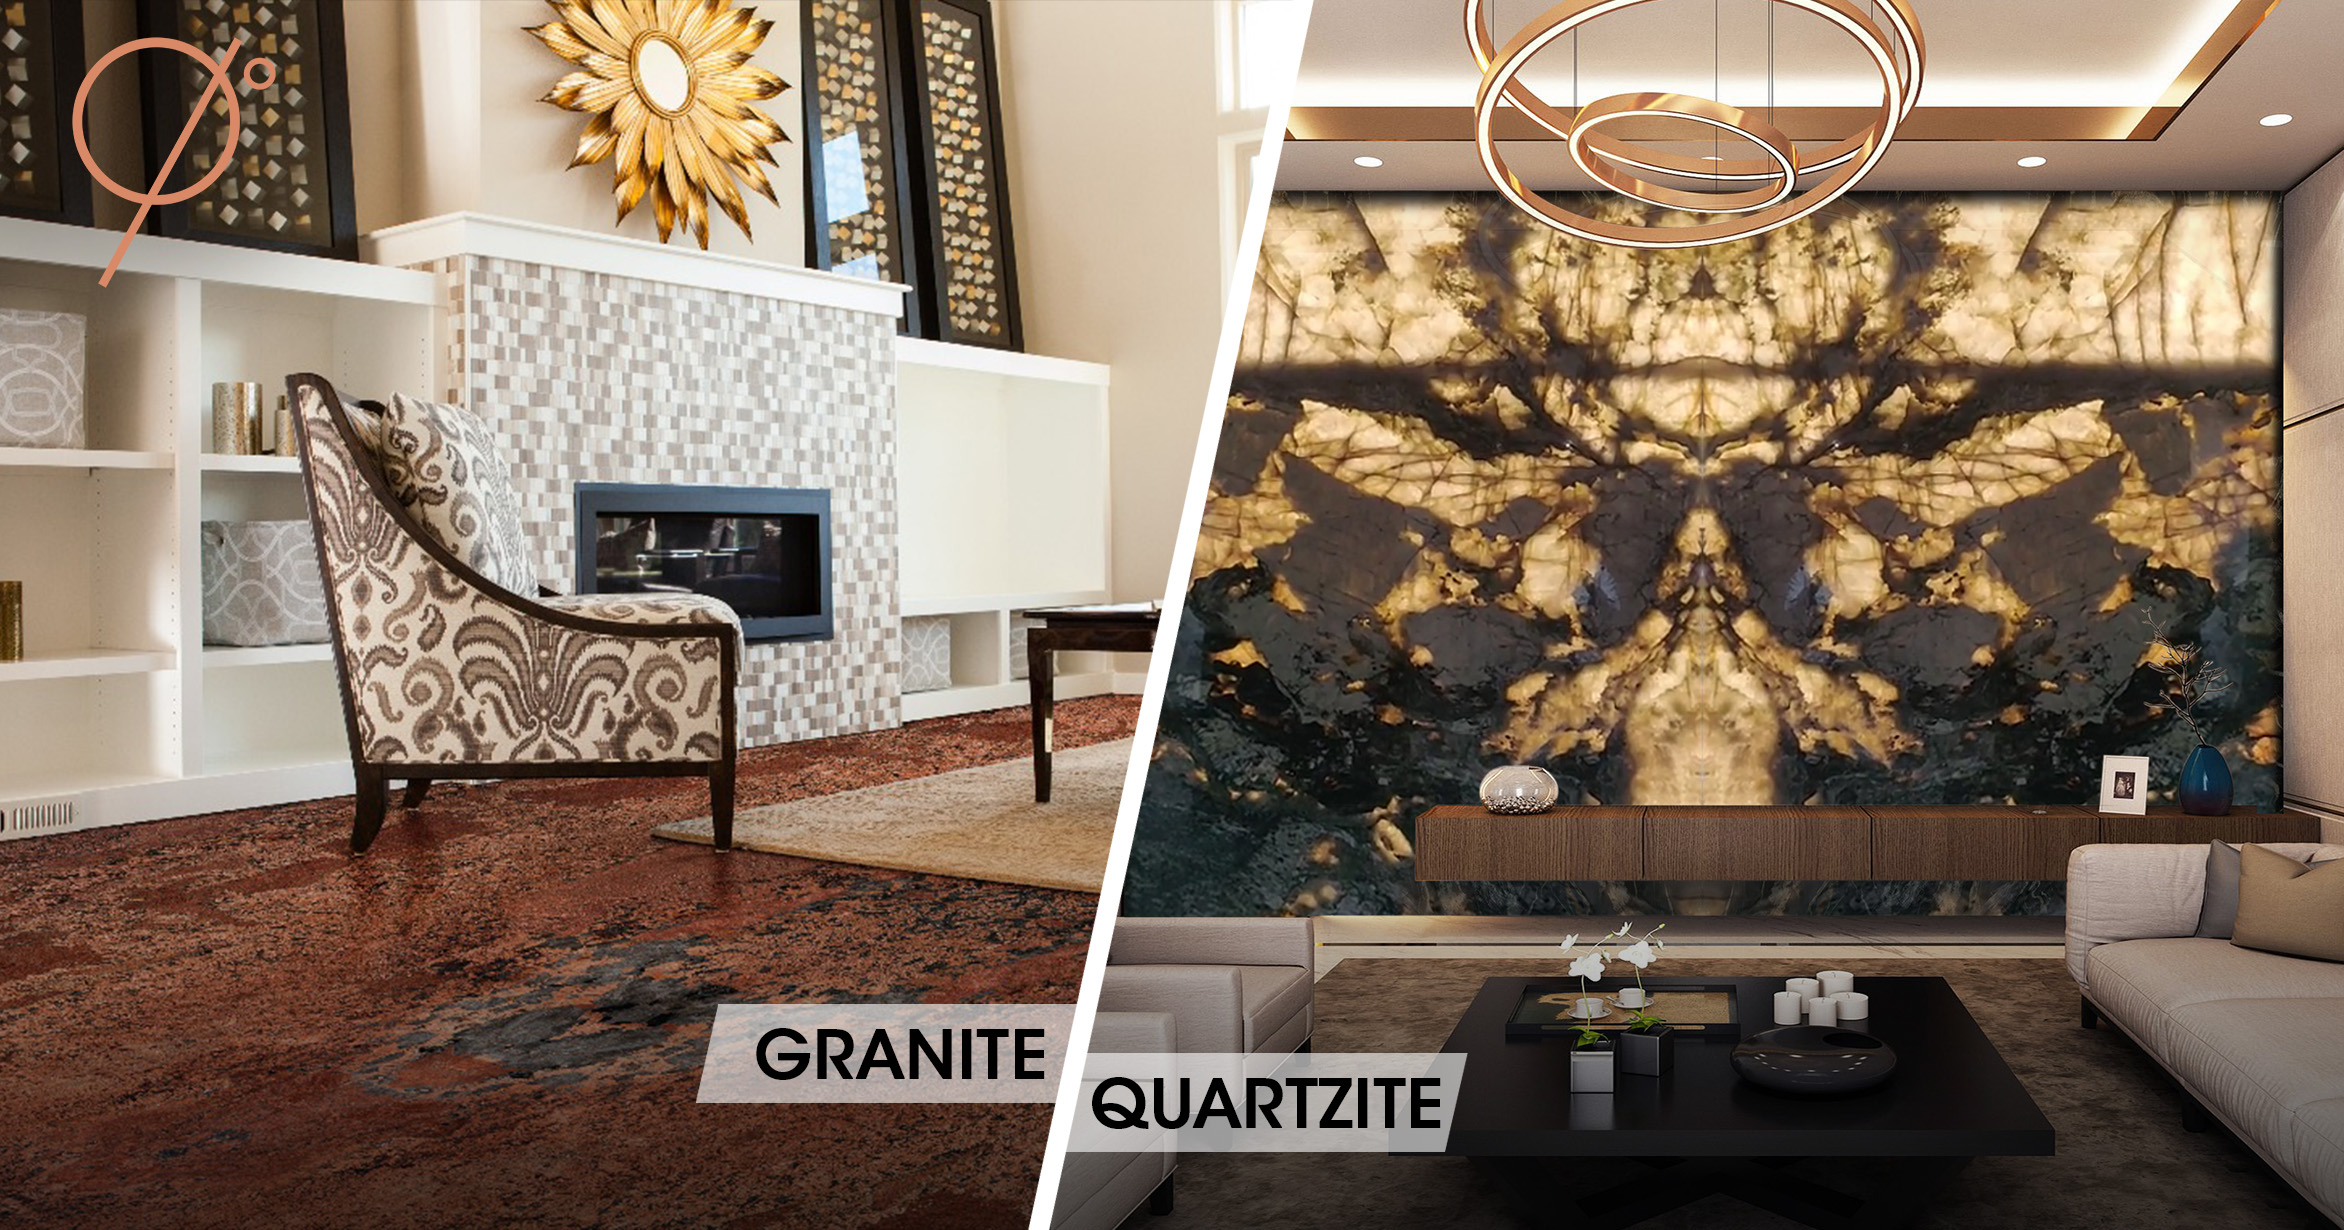 Quartzite vs. Granite: Granite is used for flooring whereas quartzite is mostly used for focus walls and exterior facades